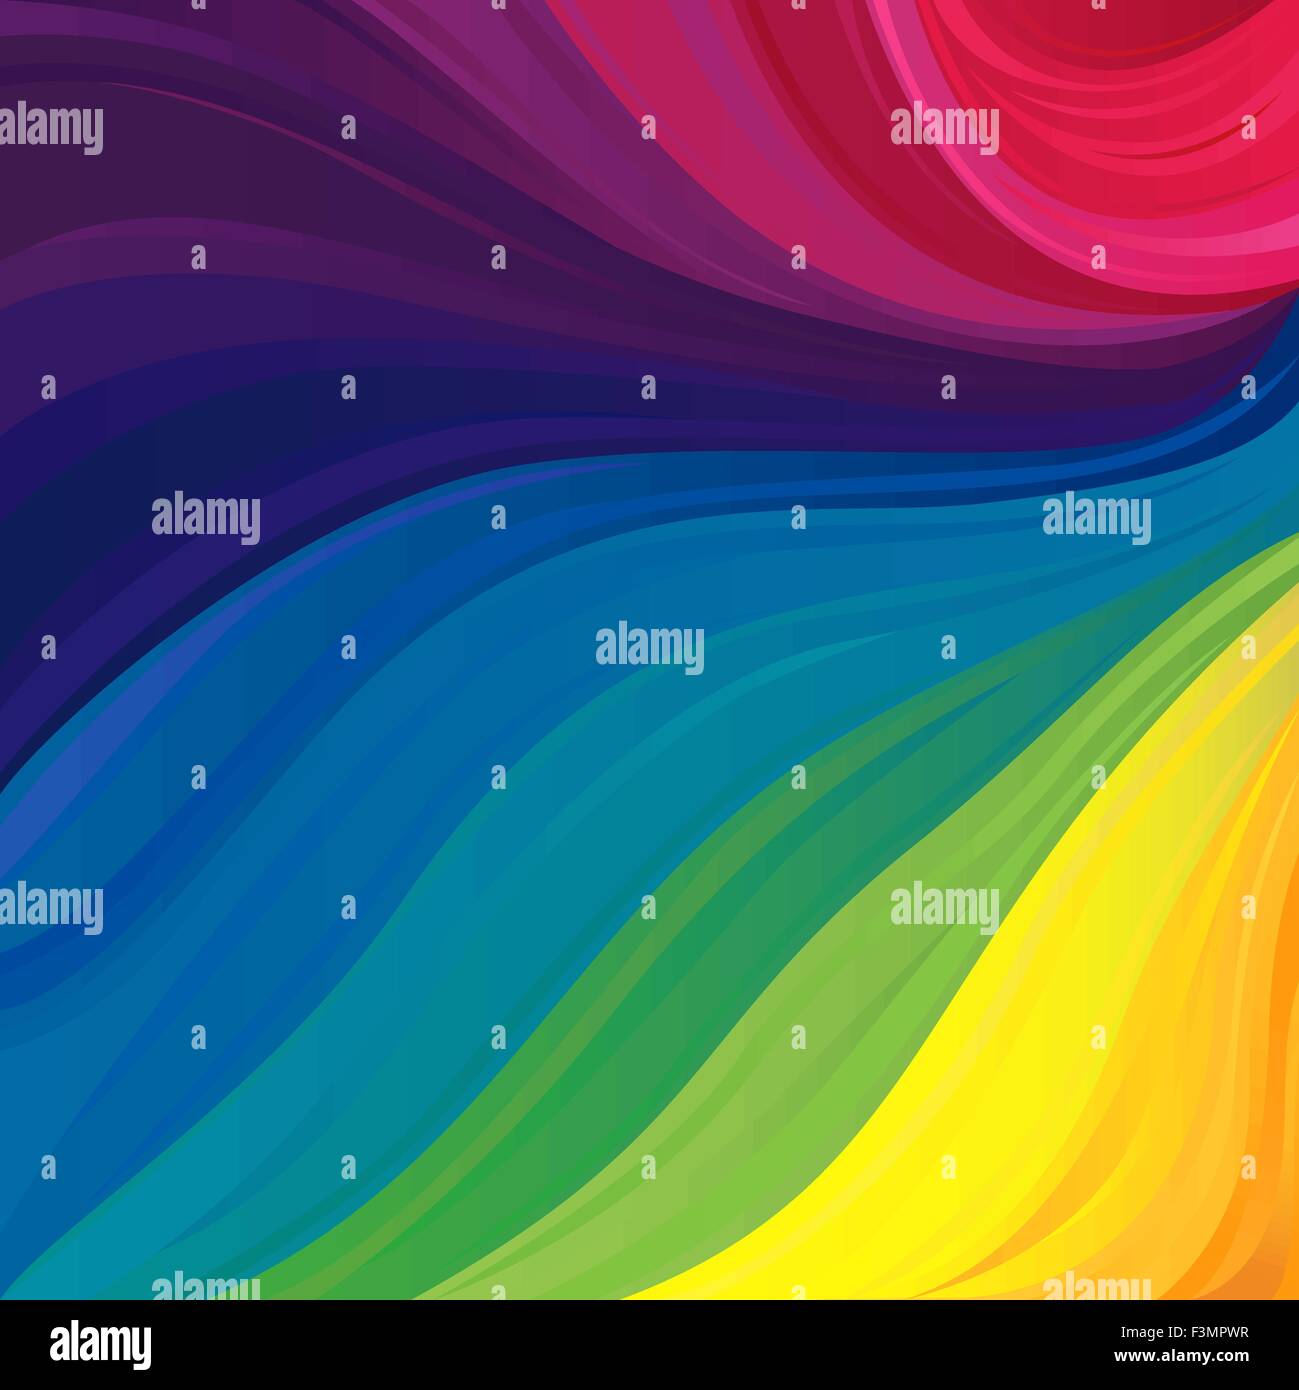 Astratto modello variegato con tutti i colori primari dello spettro visibile e le loro sfumature di colore, illustrazione vettoriale Illustrazione Vettoriale